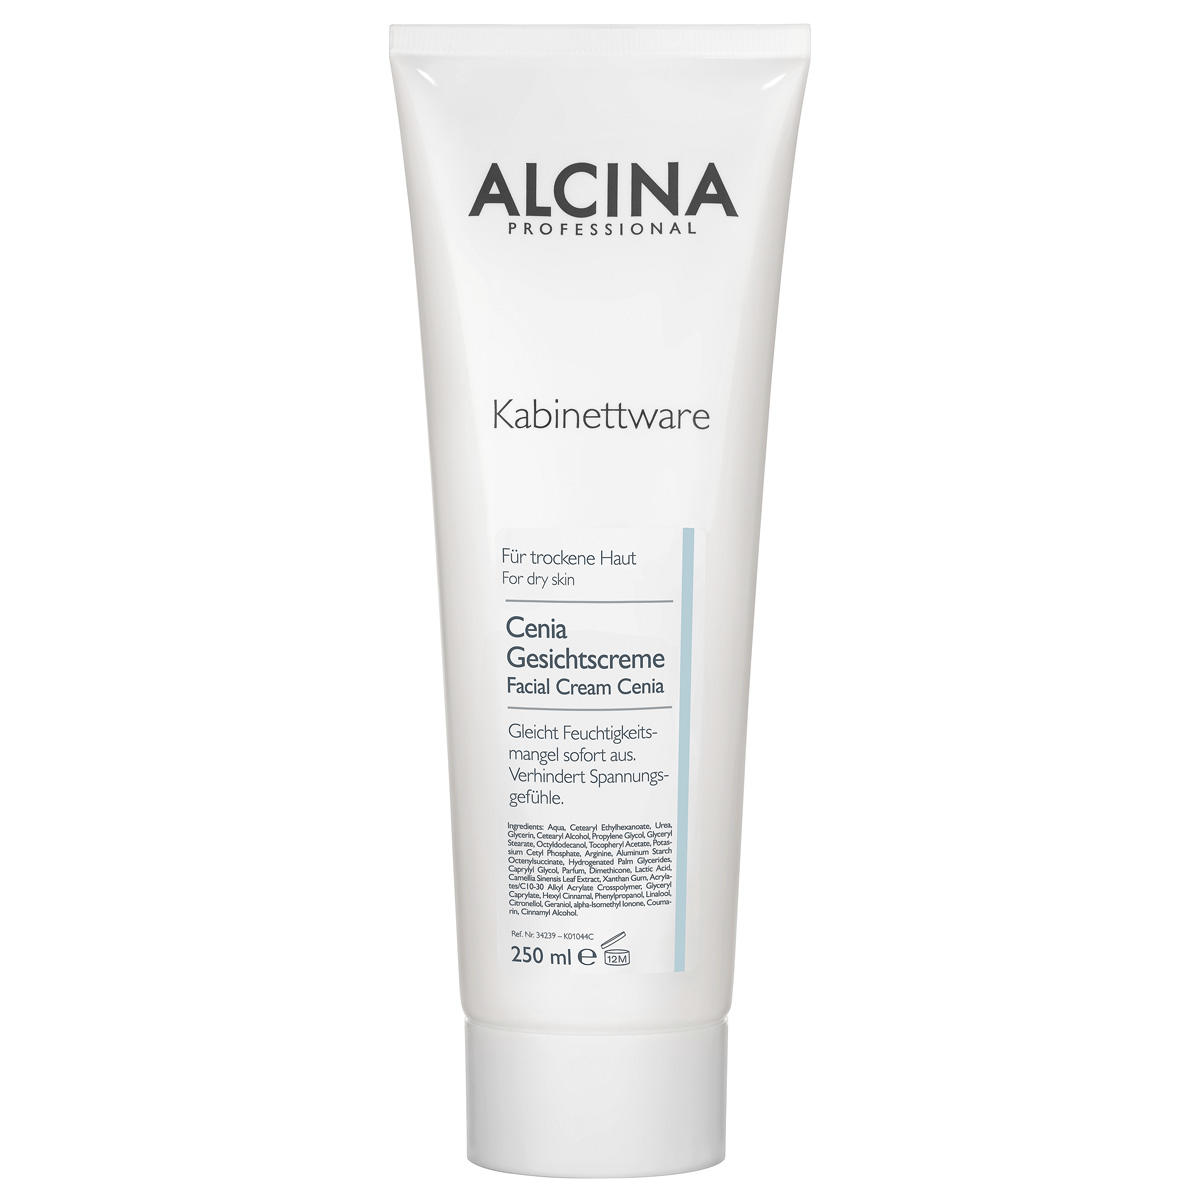 Alcina Cenia gezichtscrème 250 ml - 1